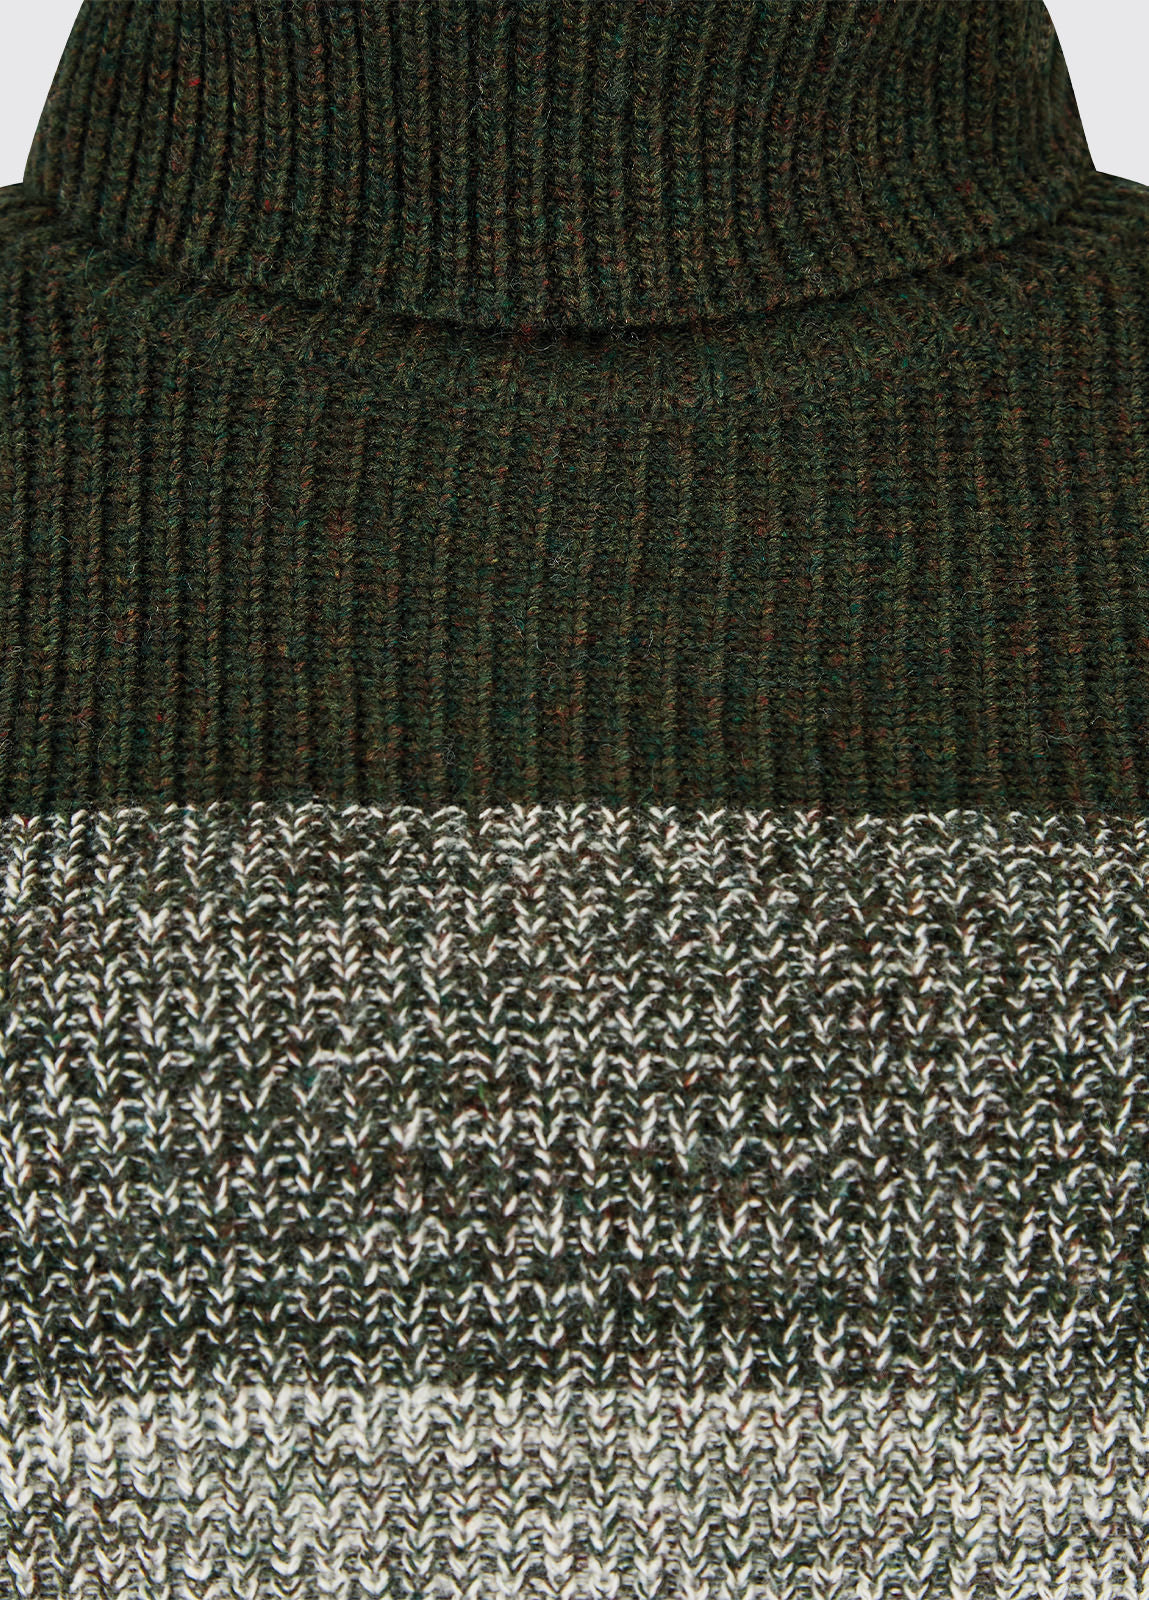 Dubarry Killossery Sweatshirt - Olive